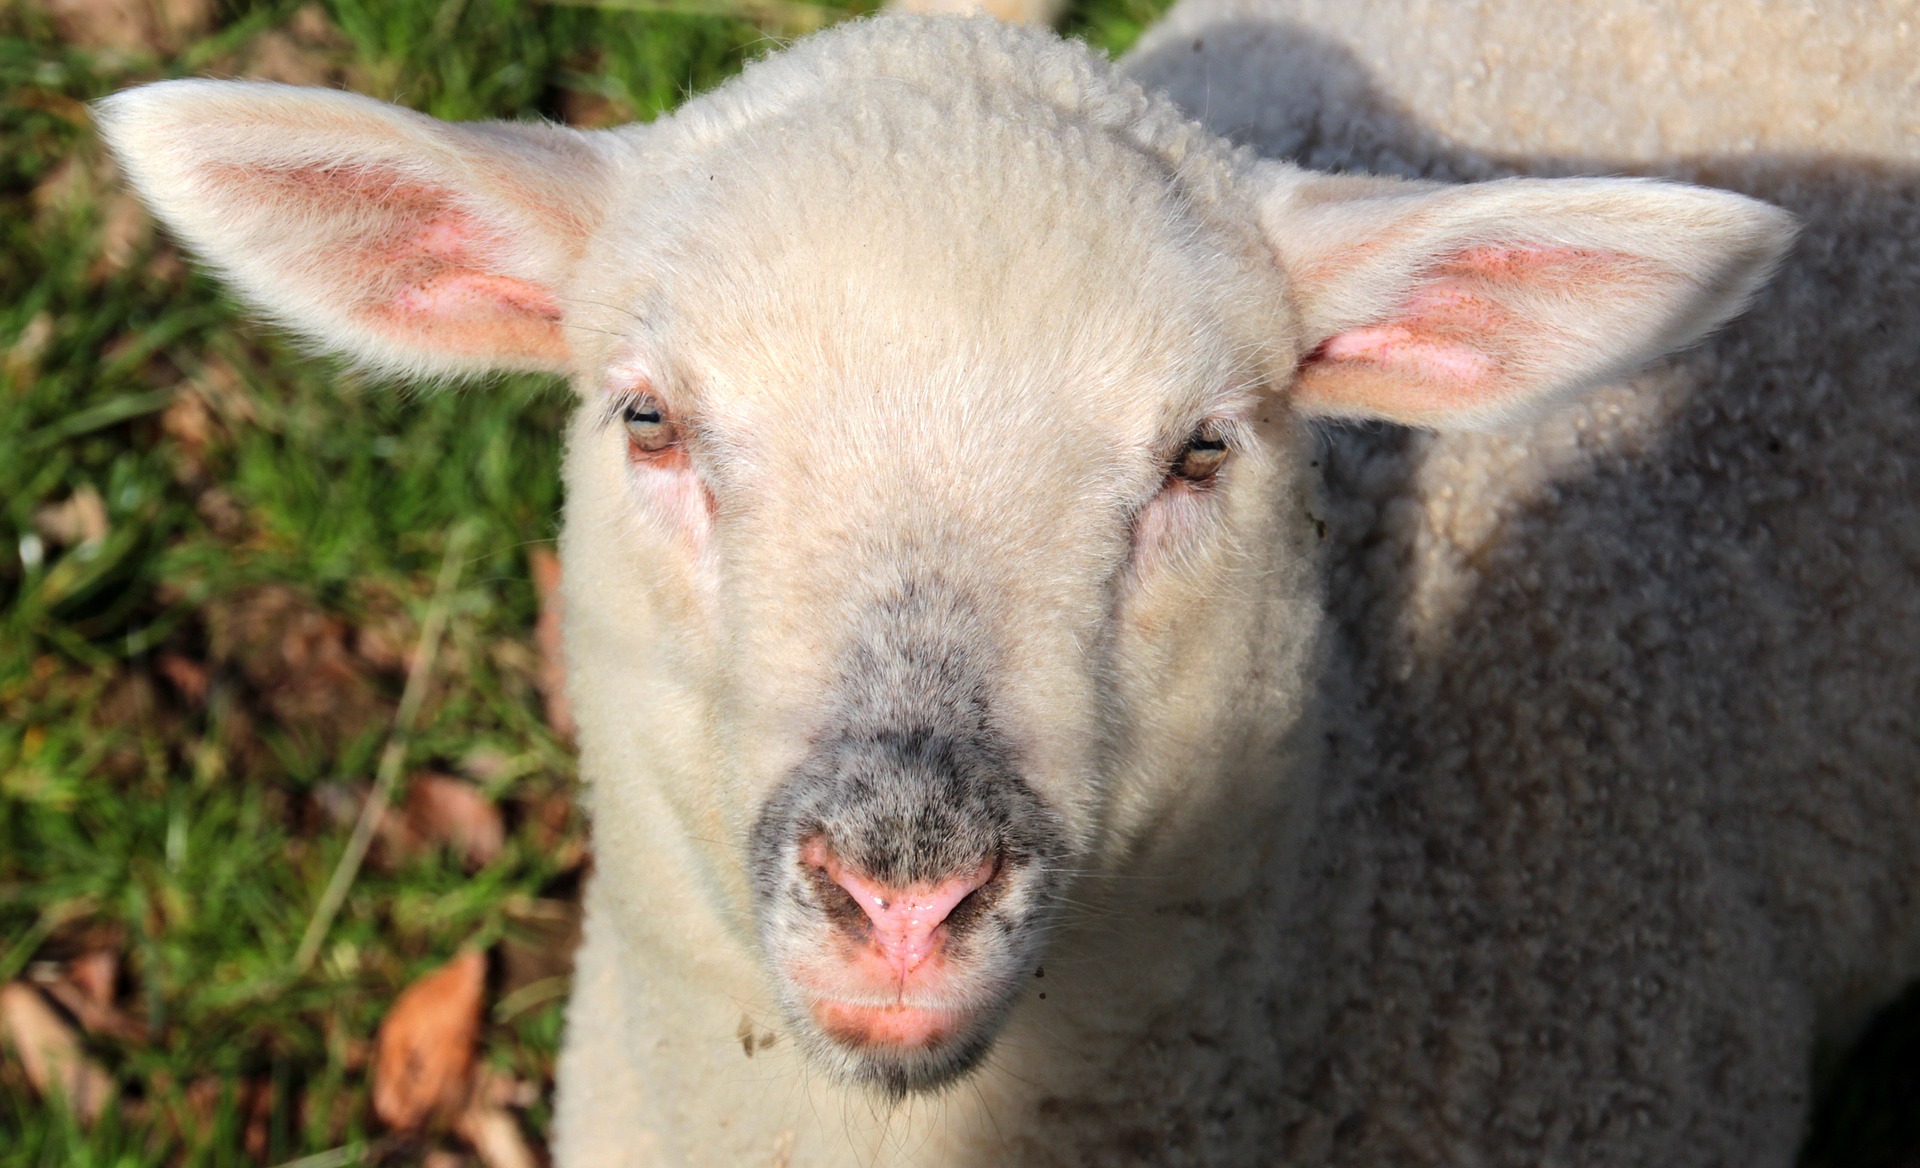 Sheep farm photo